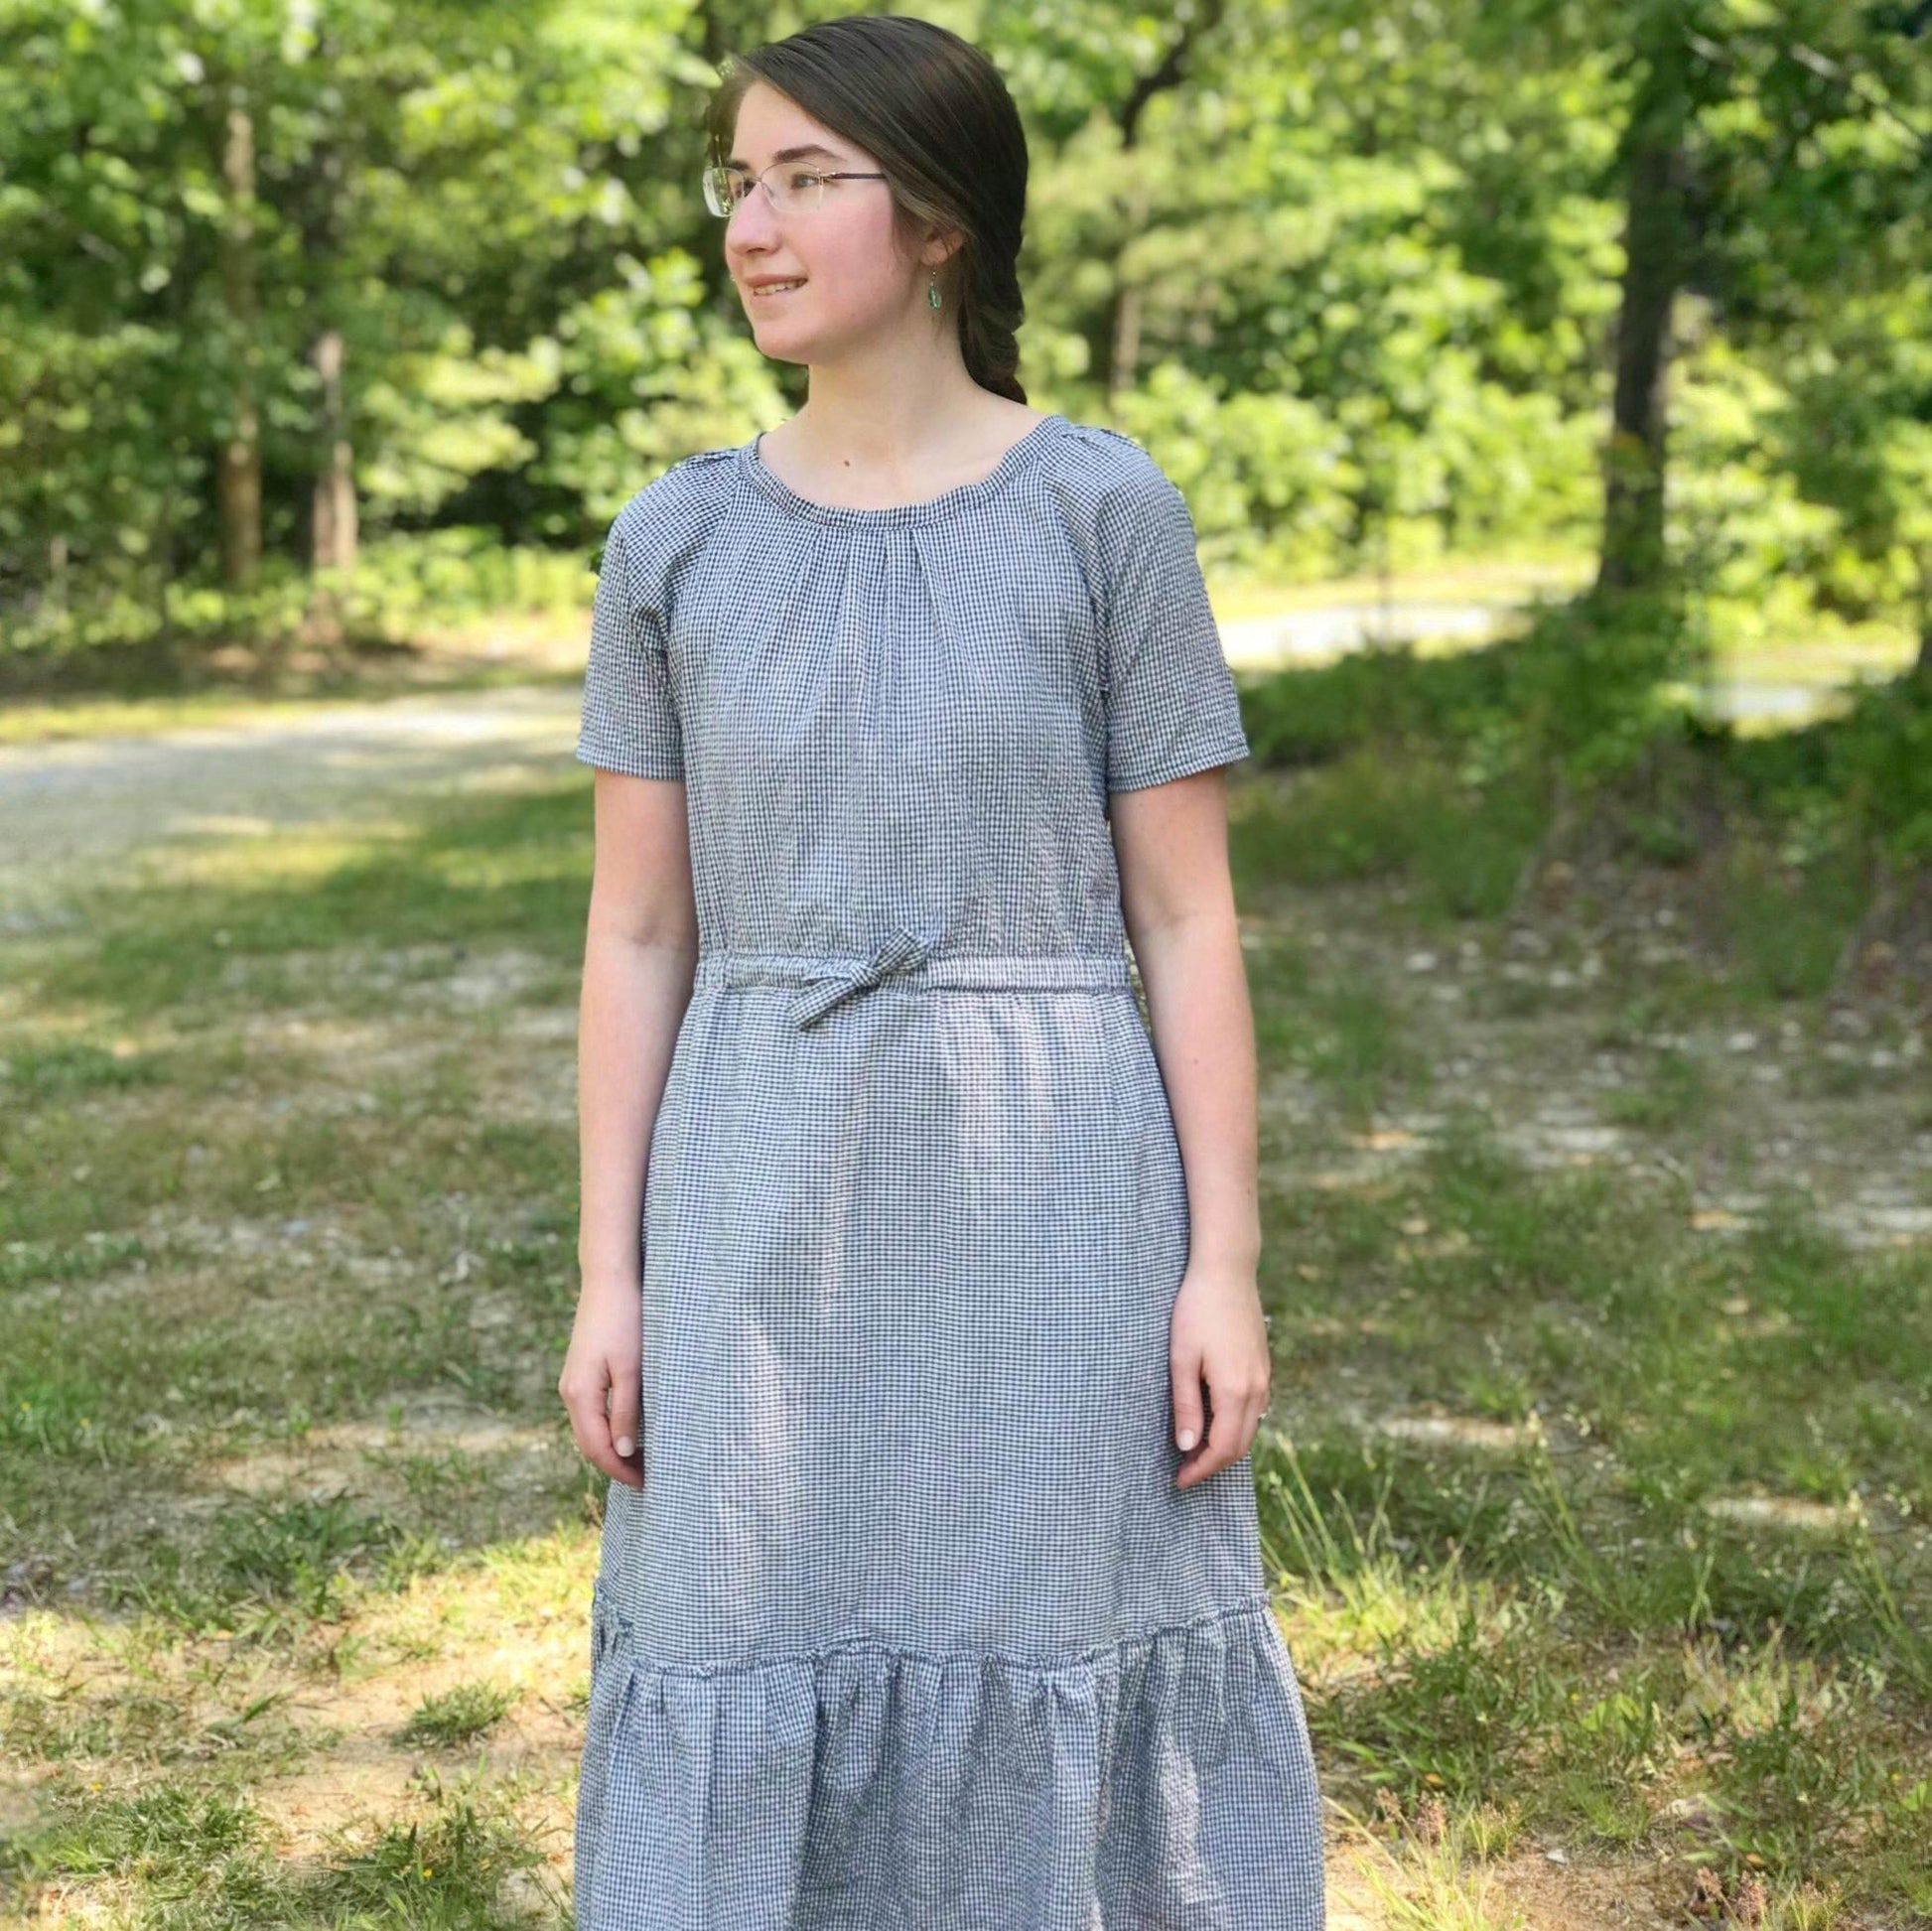 Modern Prairie Style Dress in Seersucker - Modesty n Mind